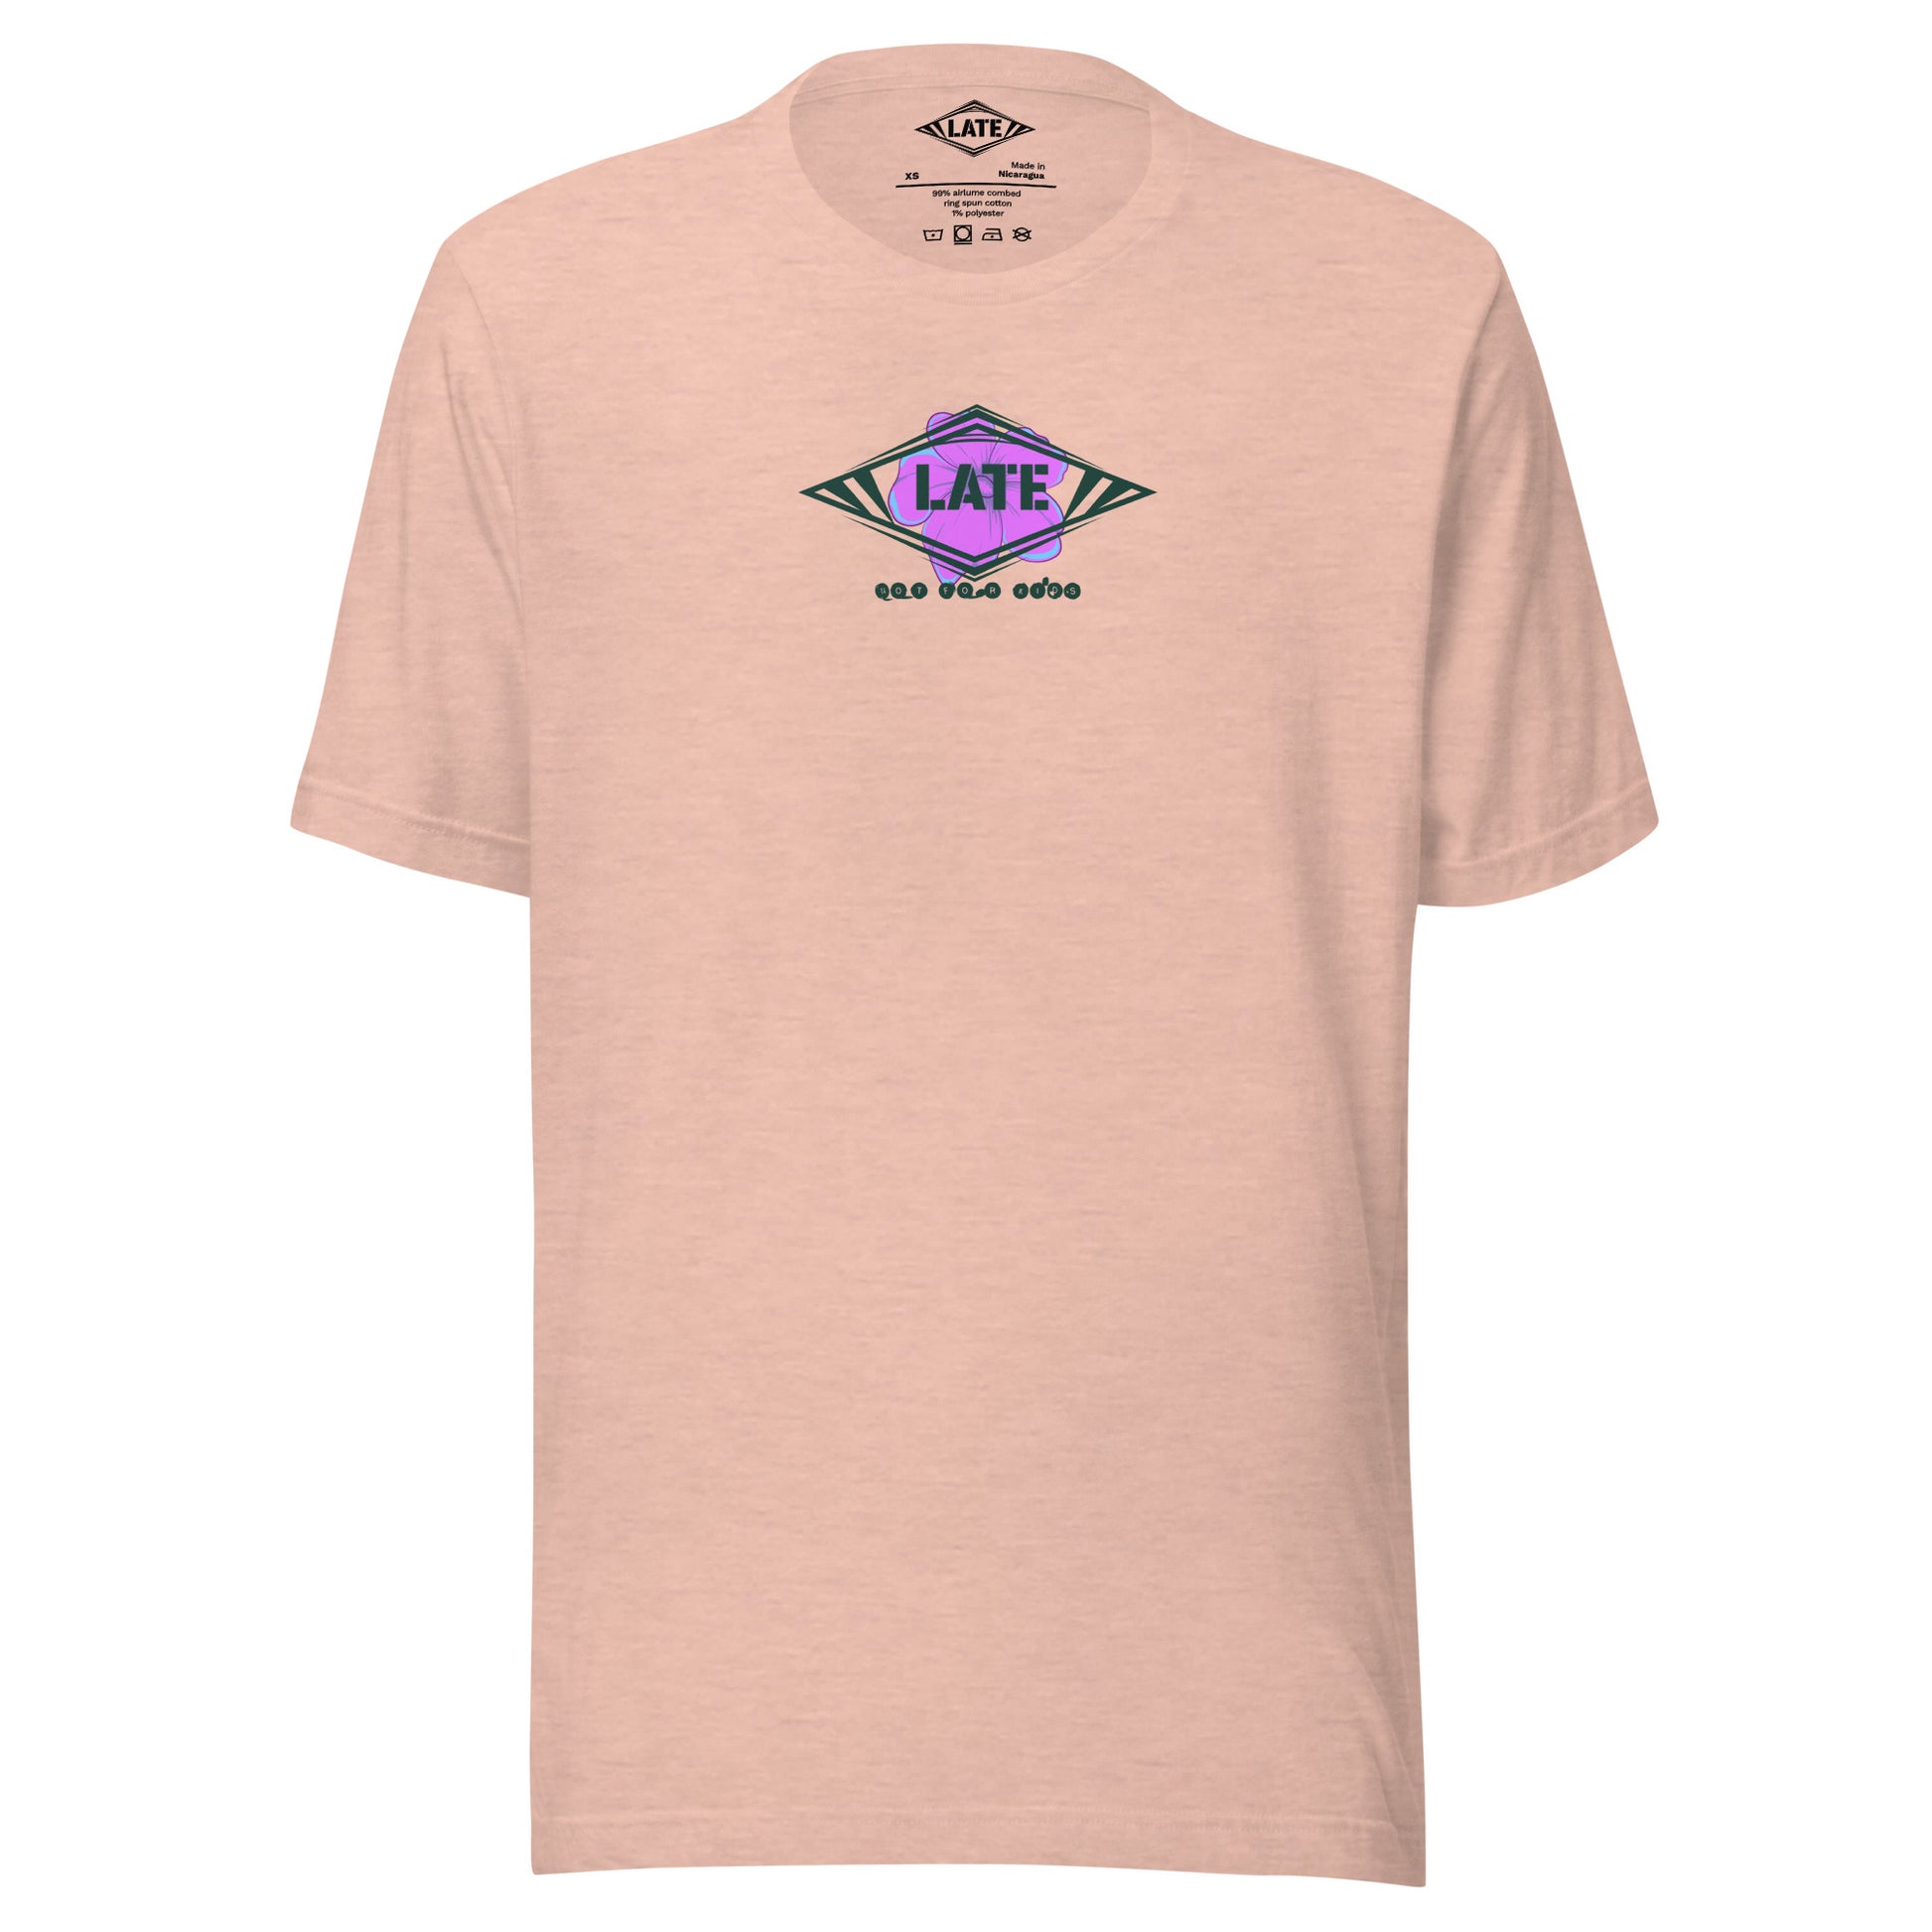 T-Shirt skate dark psychédélique de face avec motif floral texte not for kids t-shirt unisex de couleur rose peche